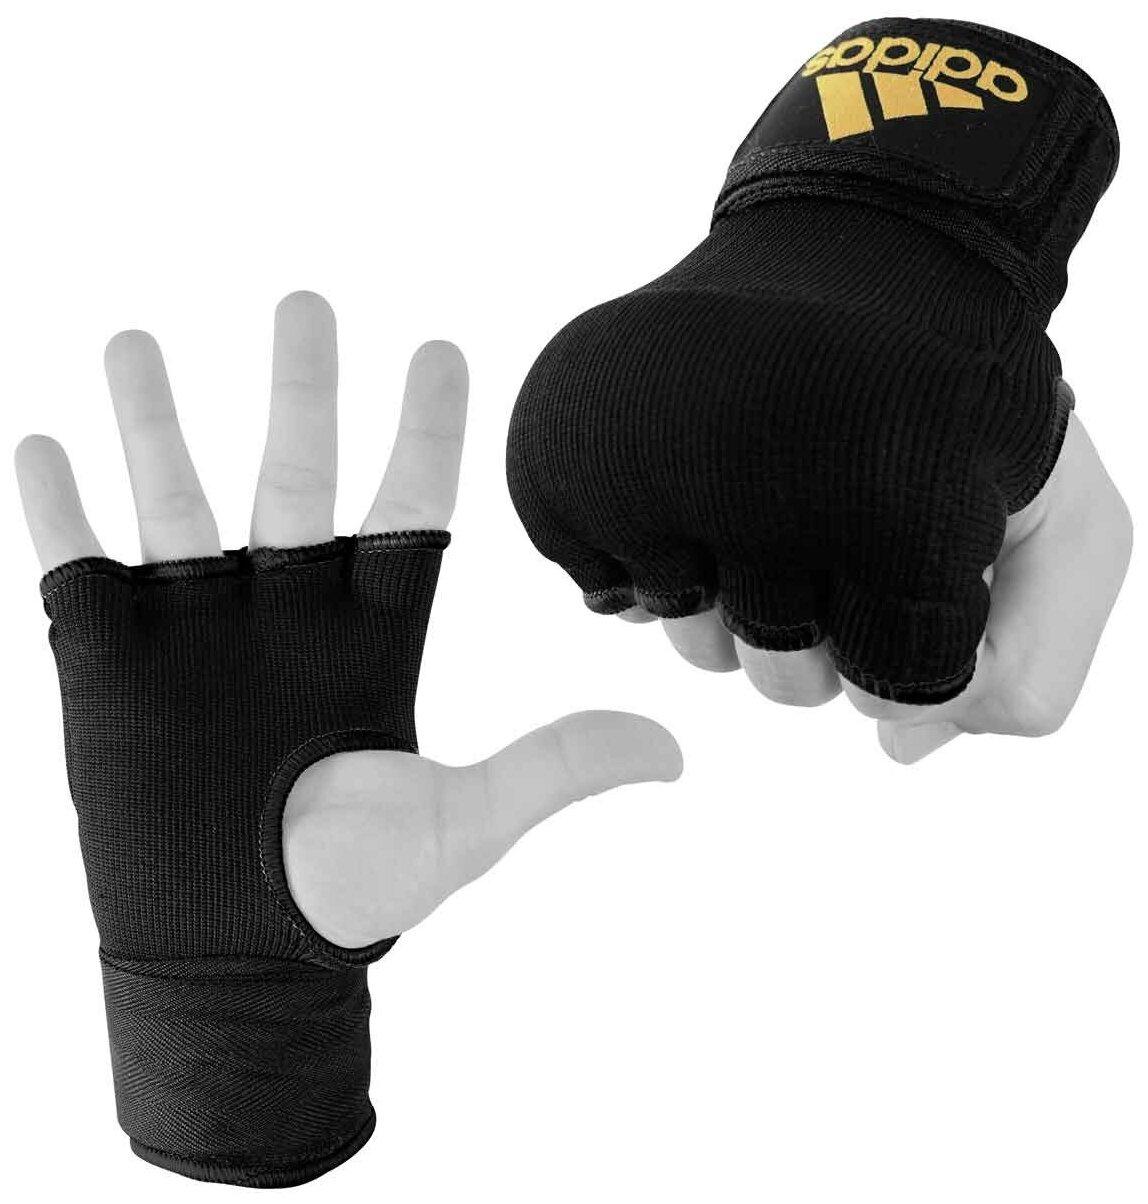 AdiBP02 внутренние перчатки SUPER INNER GLOVES черно-золотые - Adidas - Черный - M